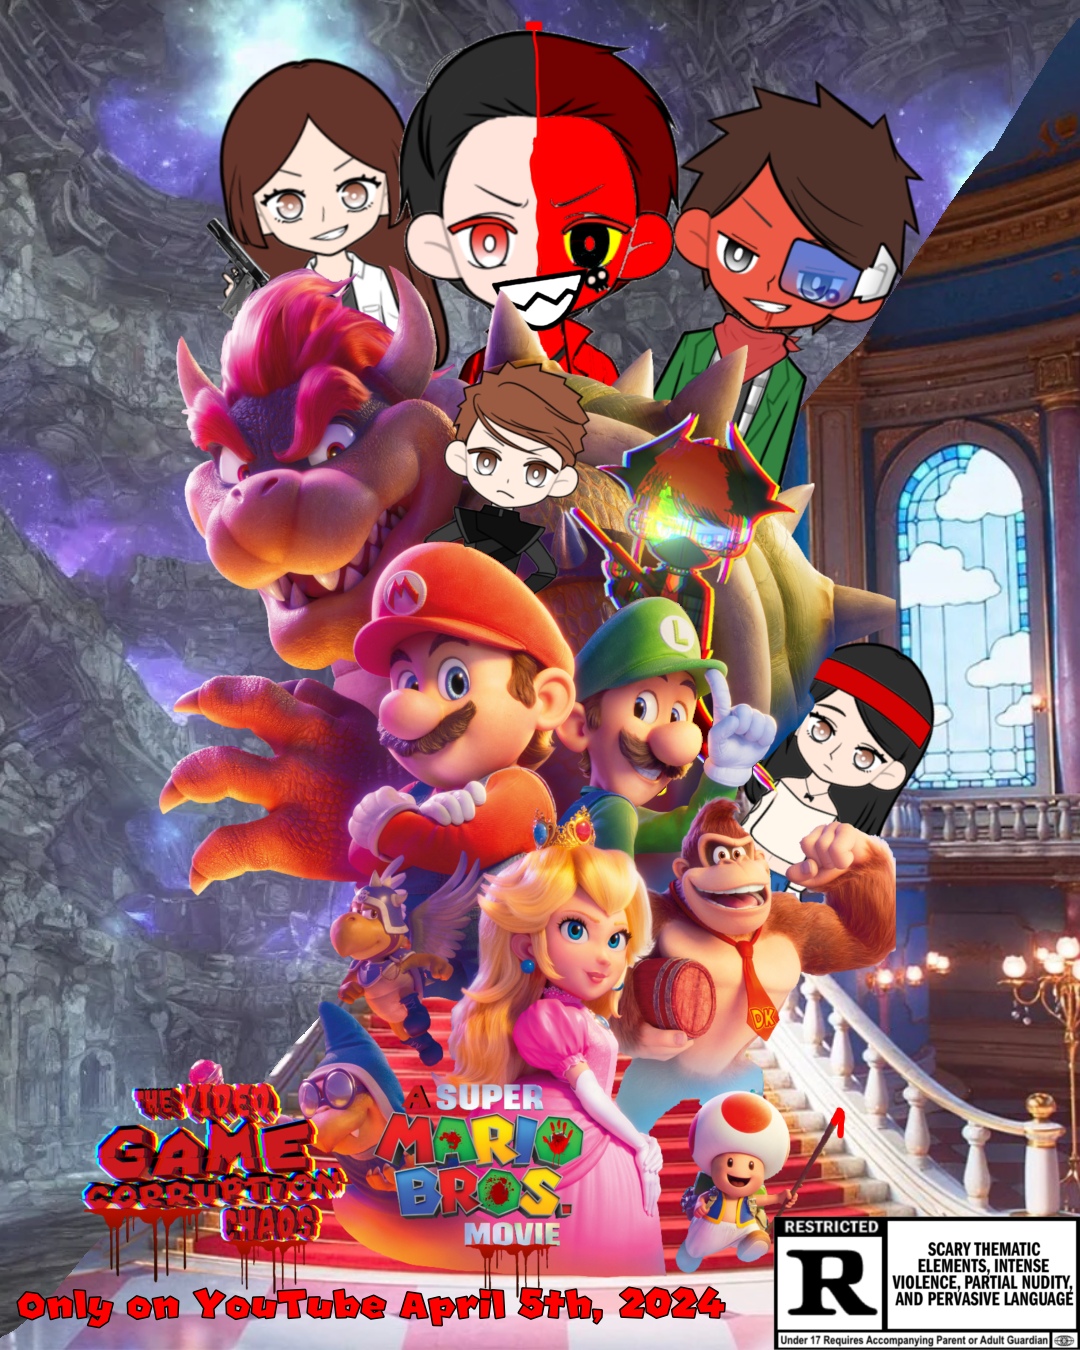 Mario Movie 2 poster concept : r/Mario